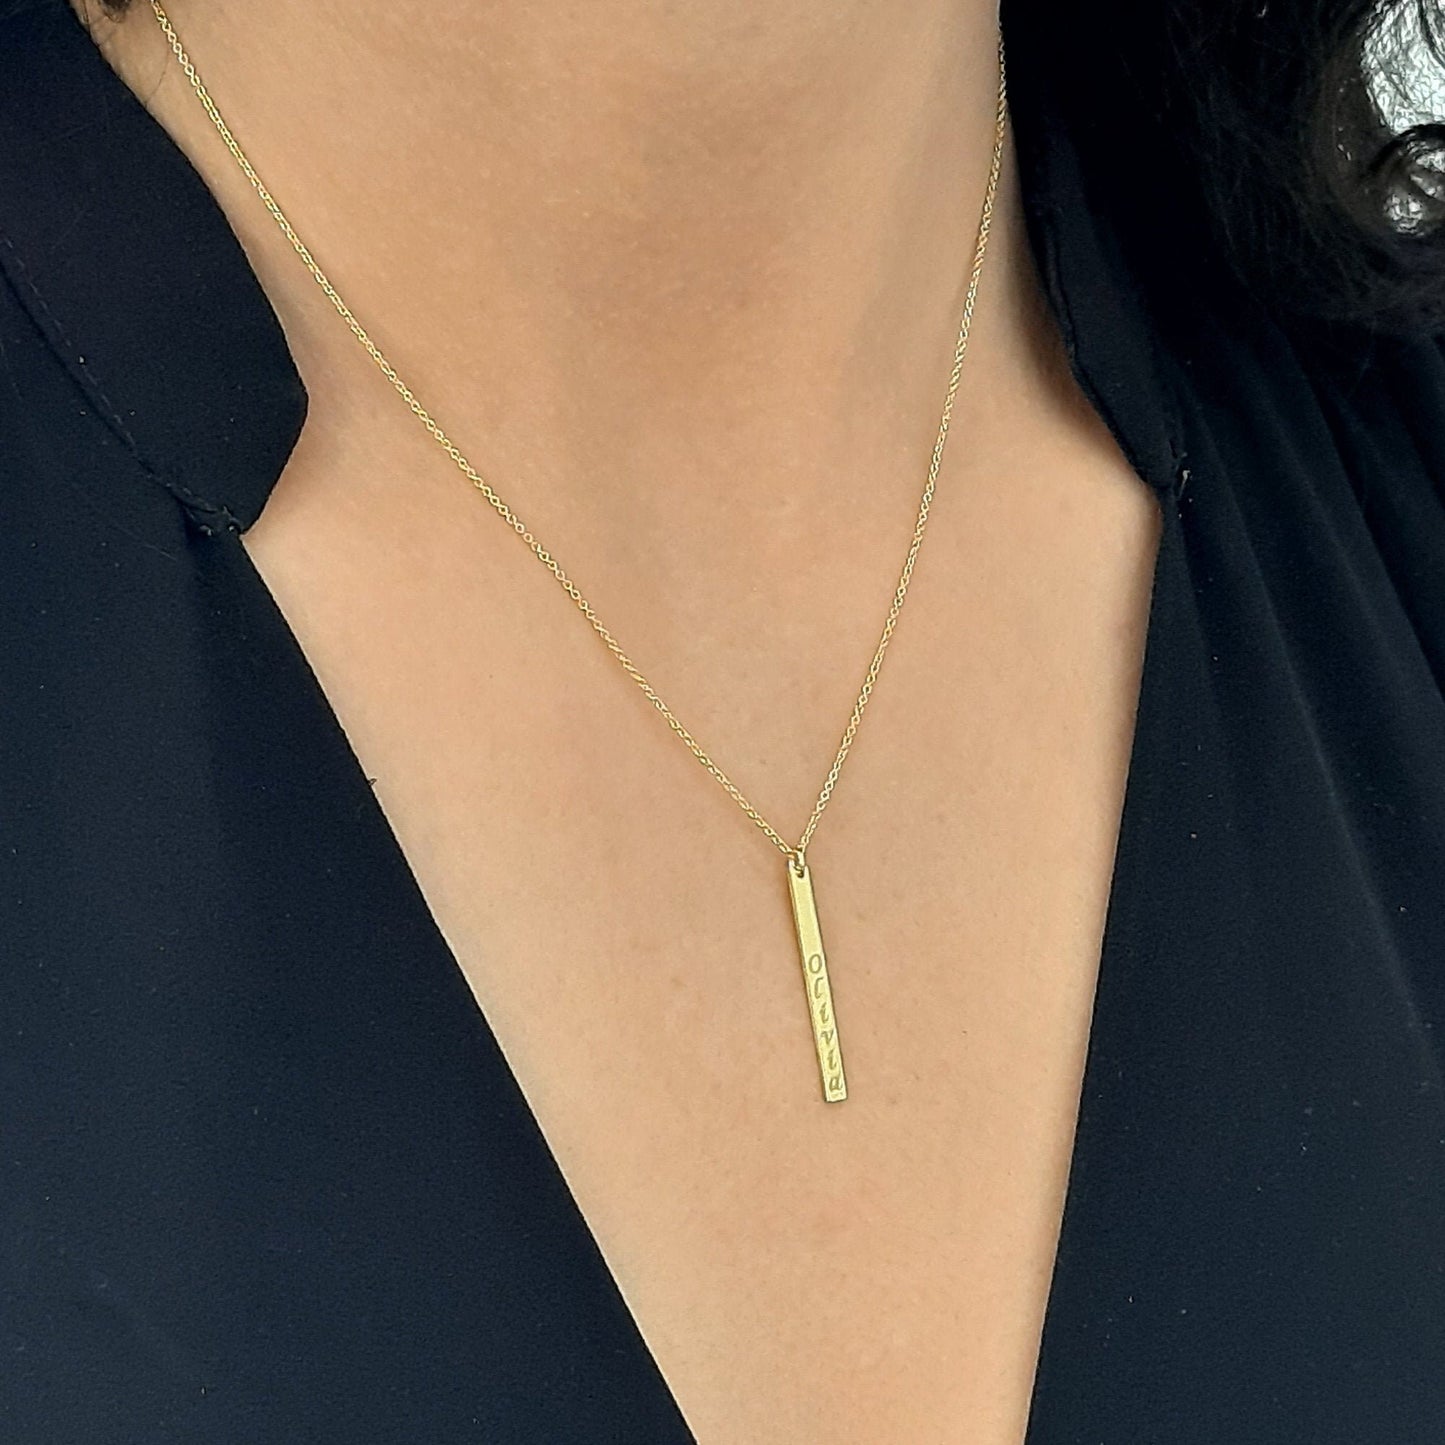 14K Solid Gold Vertical Bar Necklace, Gold Bar Necklace, Personalized Bar Necklace, Name Bar Necklace, Mama Necklace, Custom Bar Necklace